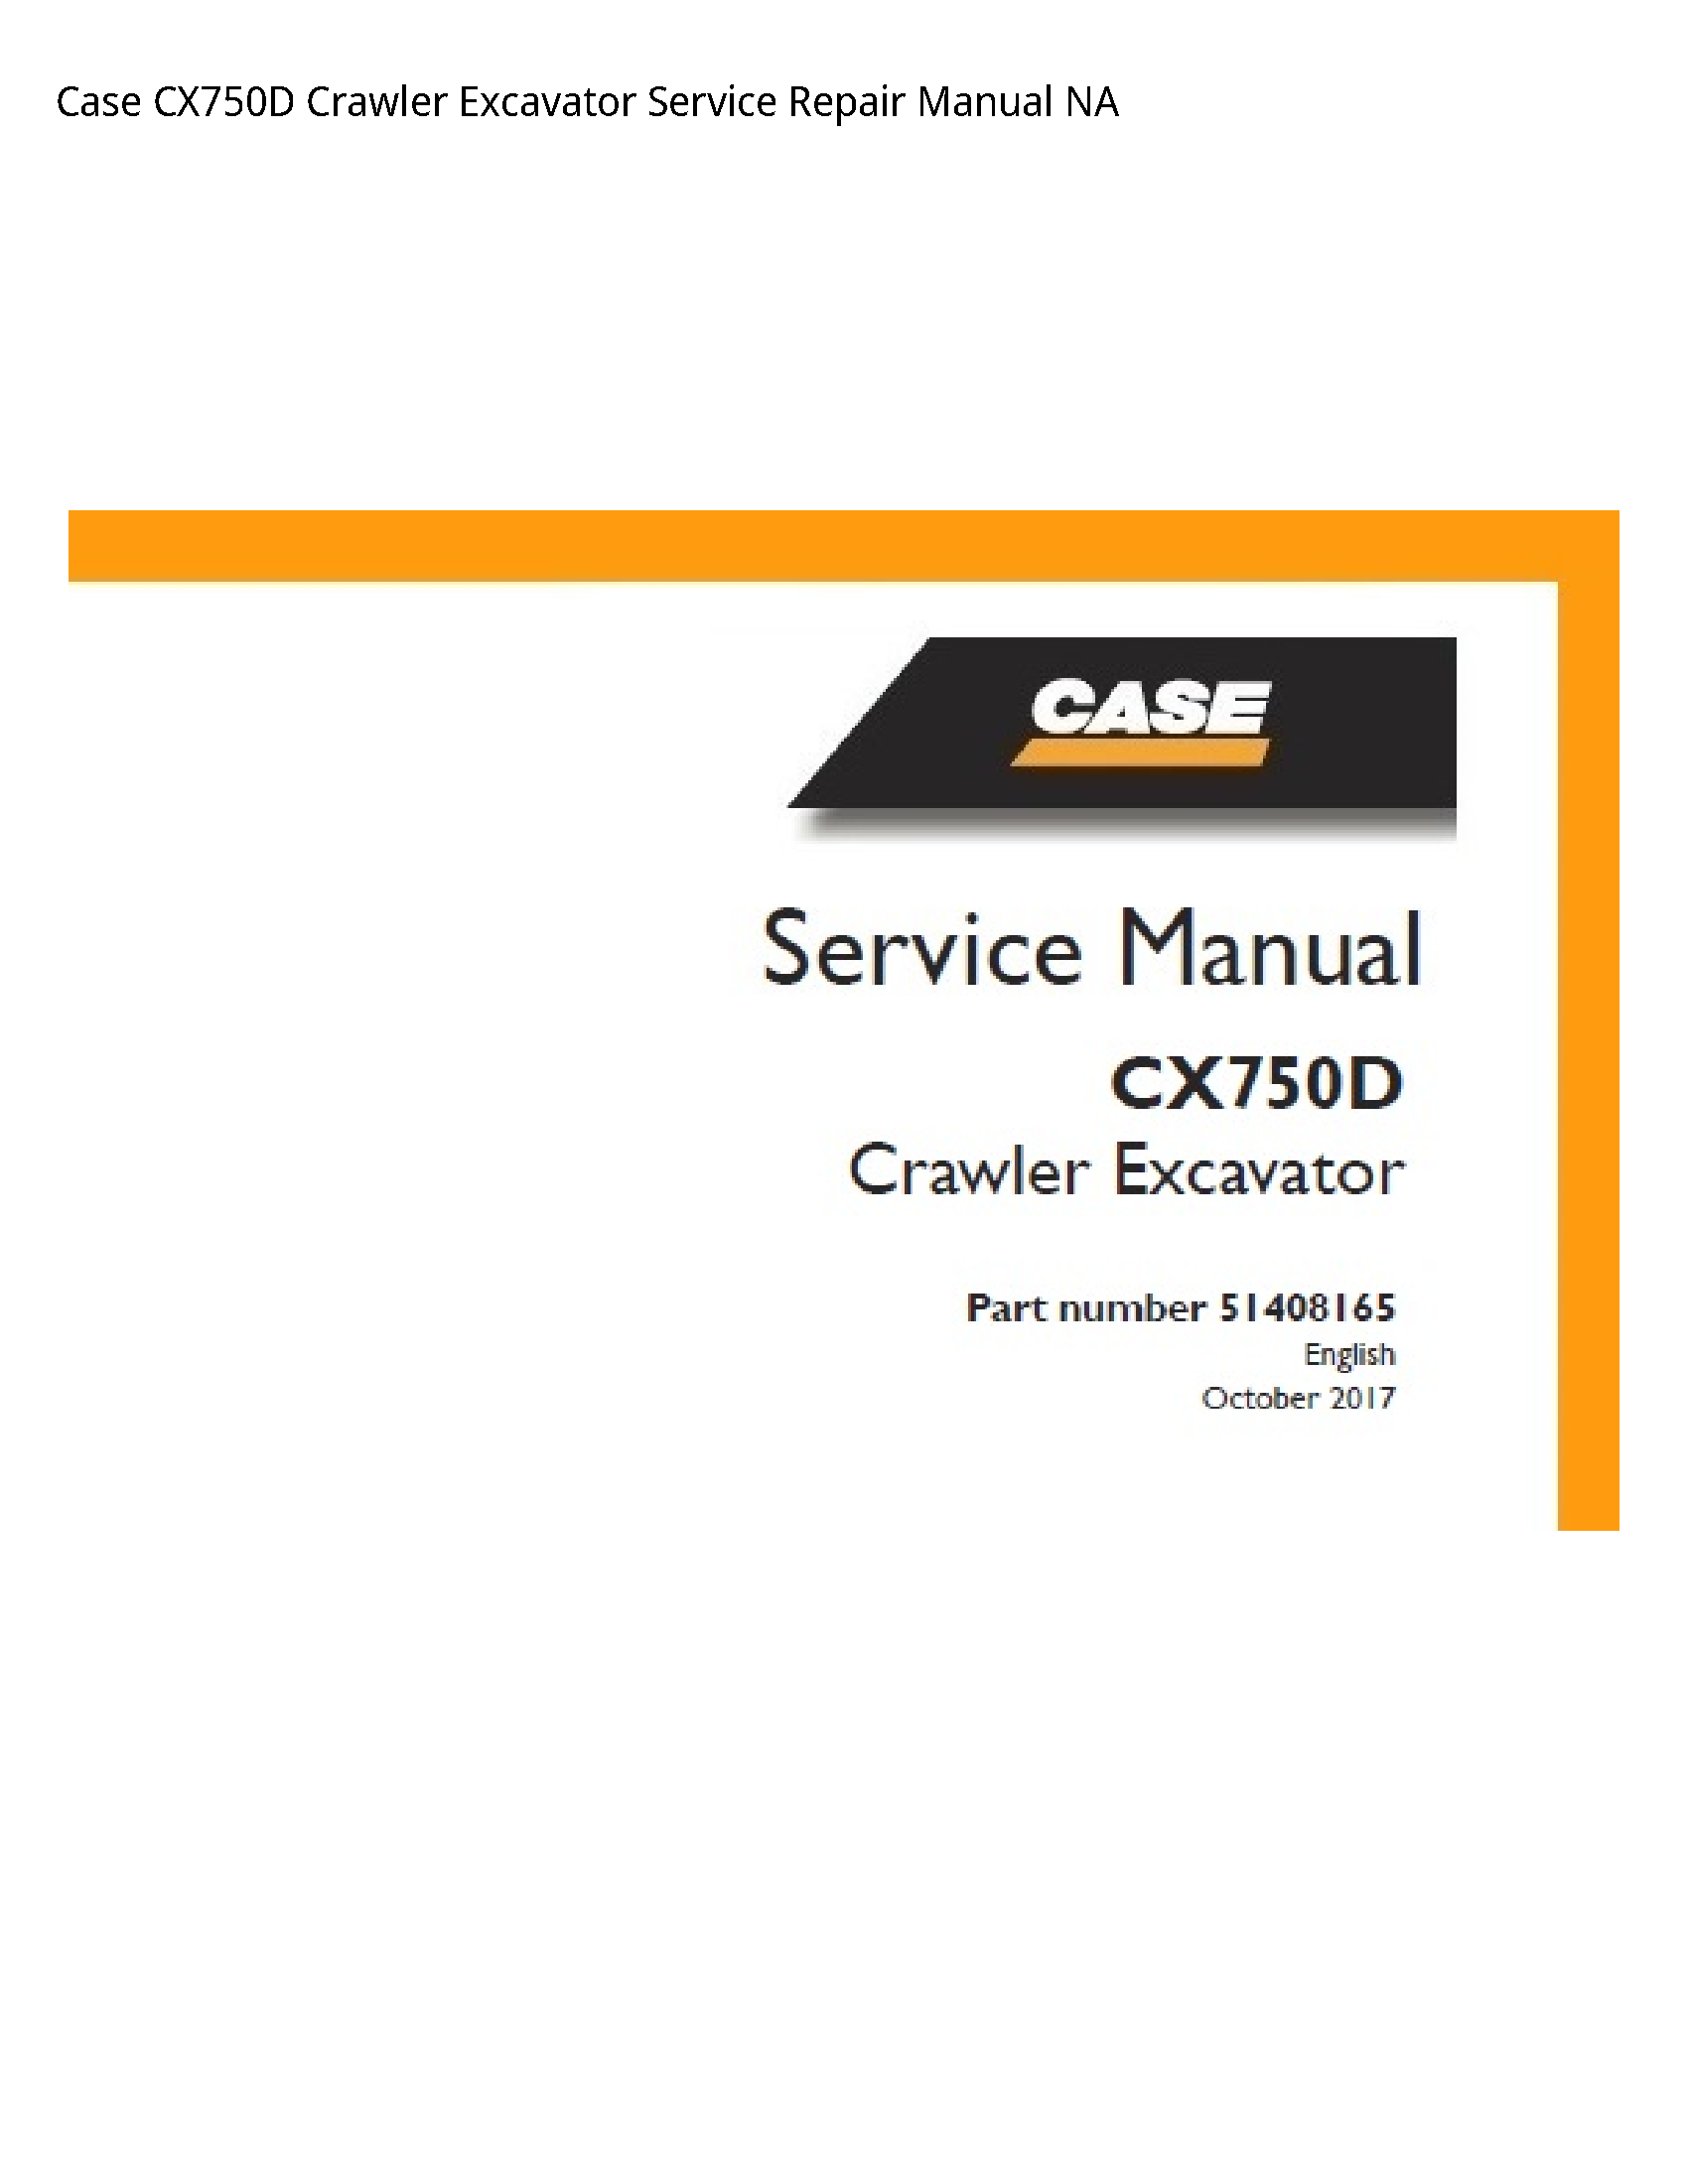 Case/Case IH CX750D Crawler Excavator manual